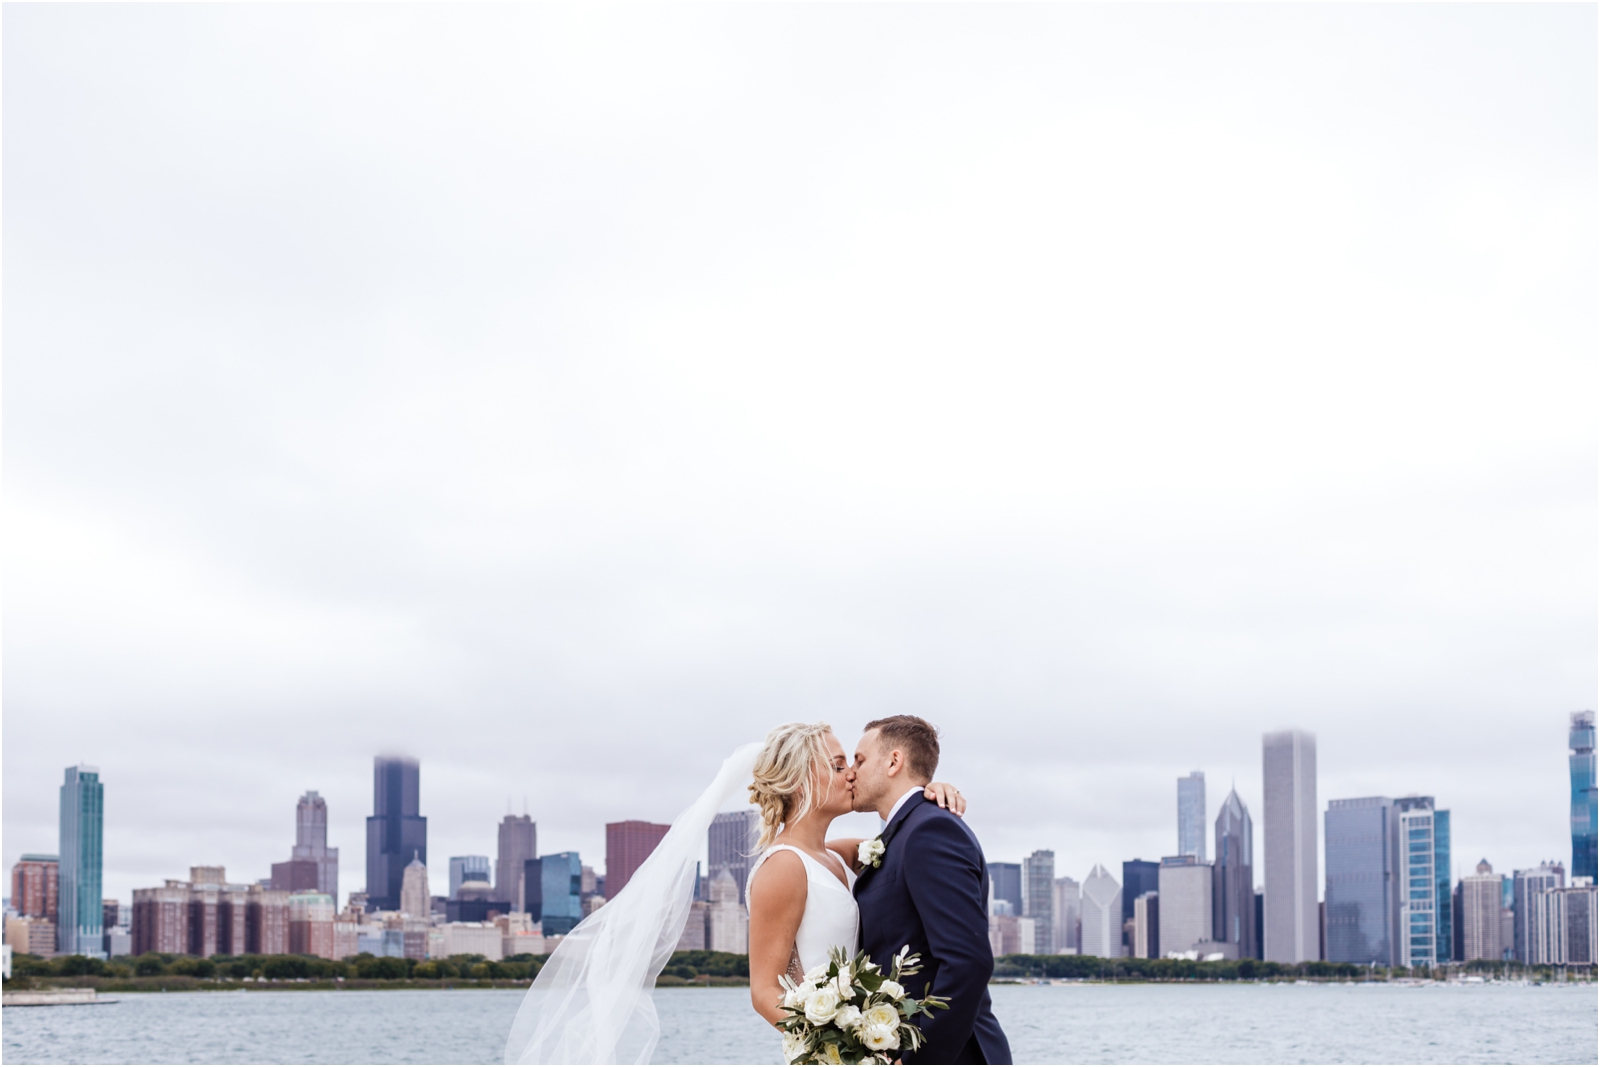 Dalcy-Wedding-Chicago-JillTiongcoPhotography_0025.jpg